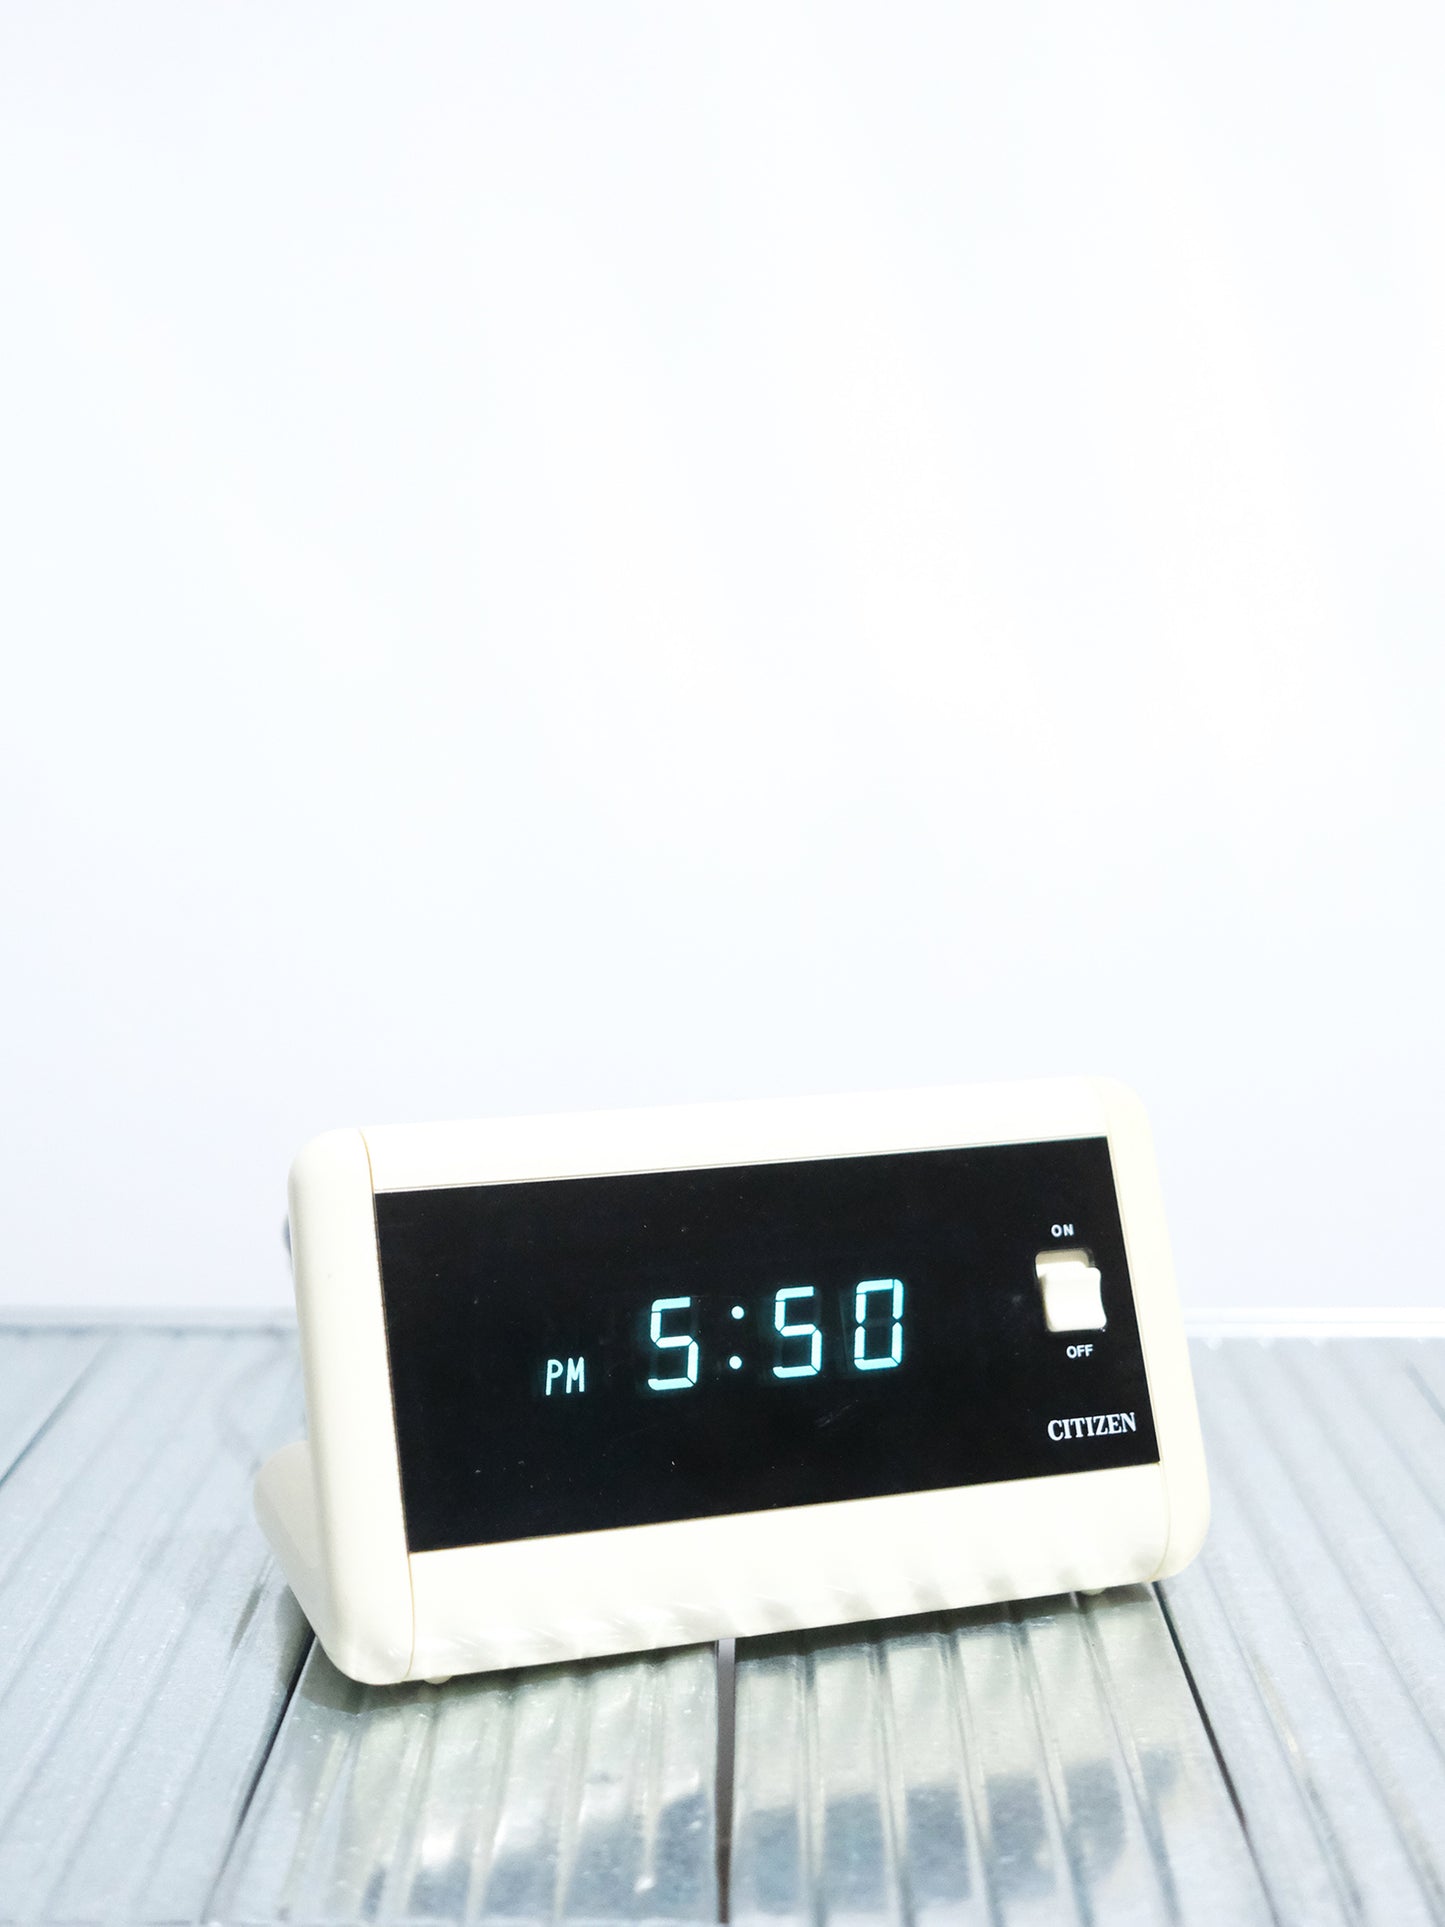 全新品 日本制 Citizen 星辰 5RD606 Digital Alarm Clock 電子 鬧鐘 時計